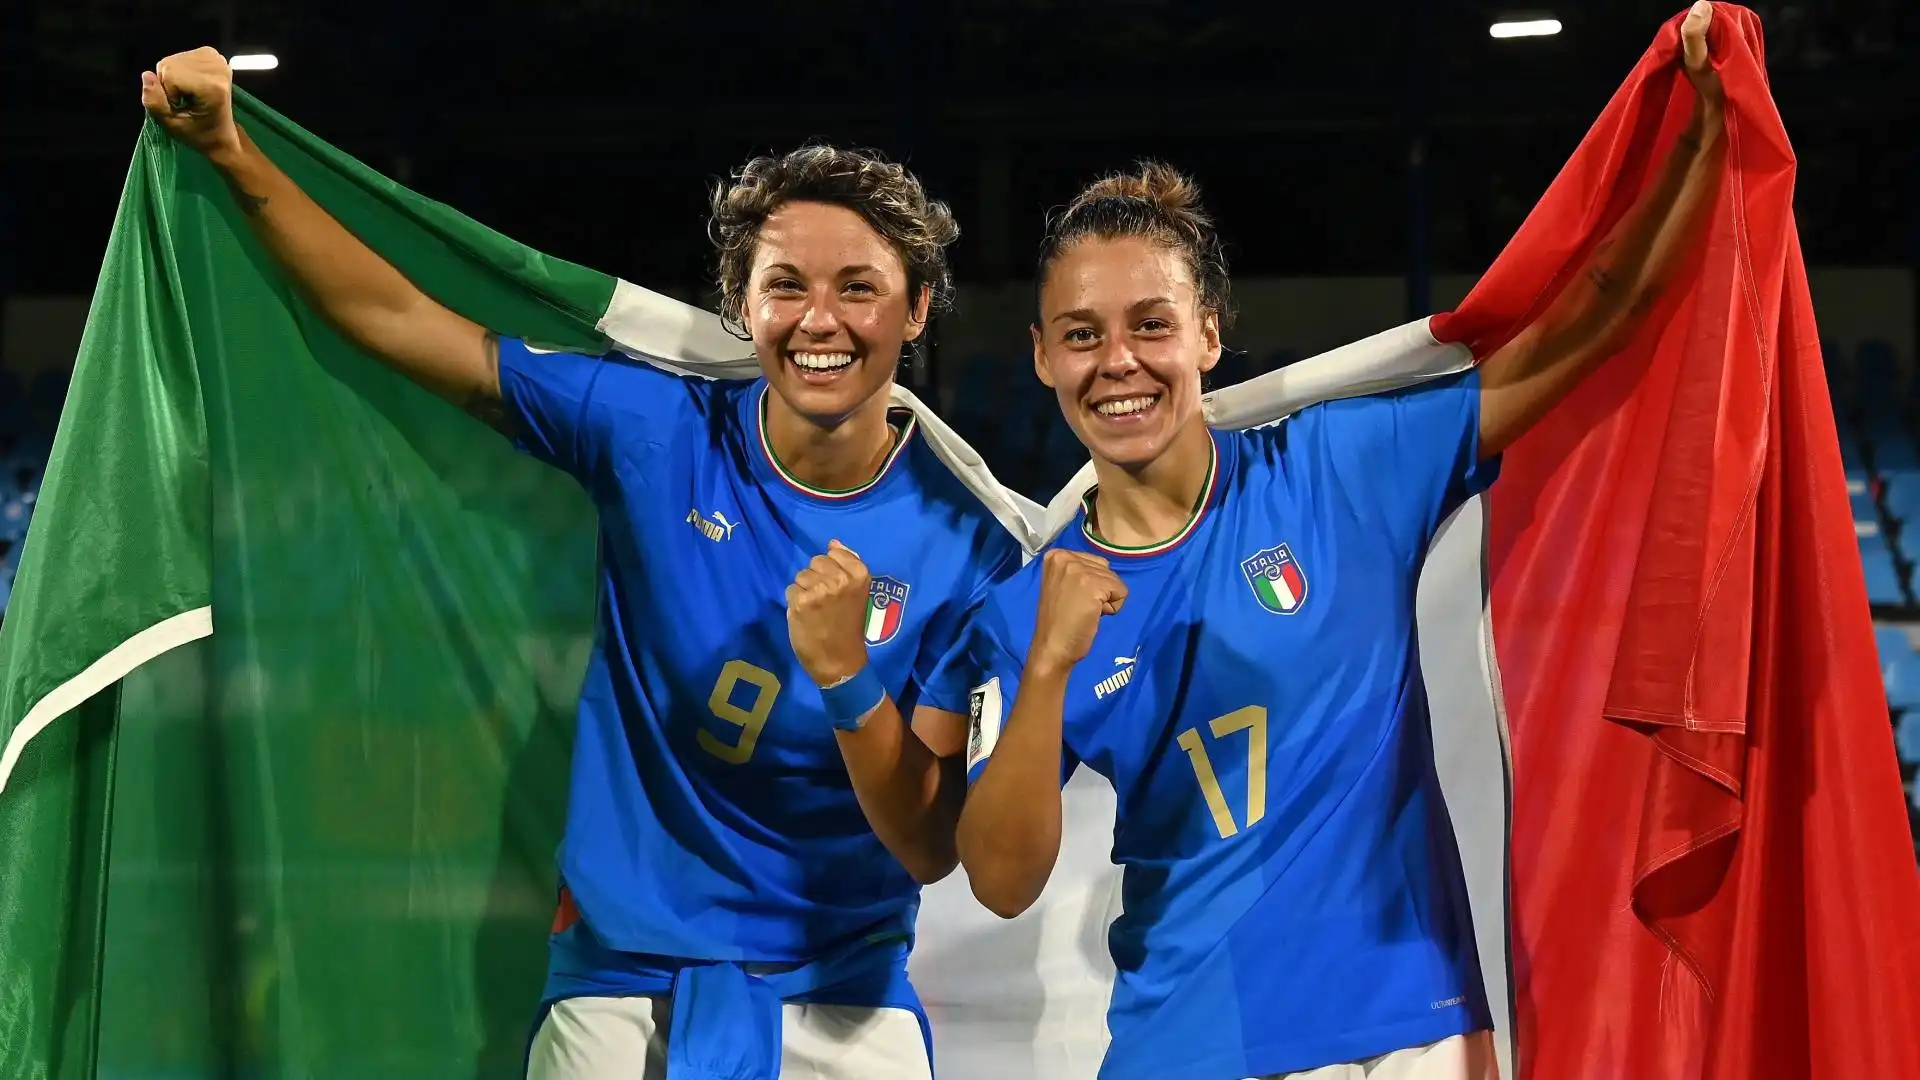 L'Italia femminile riesce a qualificarsi ai mondiali, decisiva la vittoria sulla nazionale rumena.